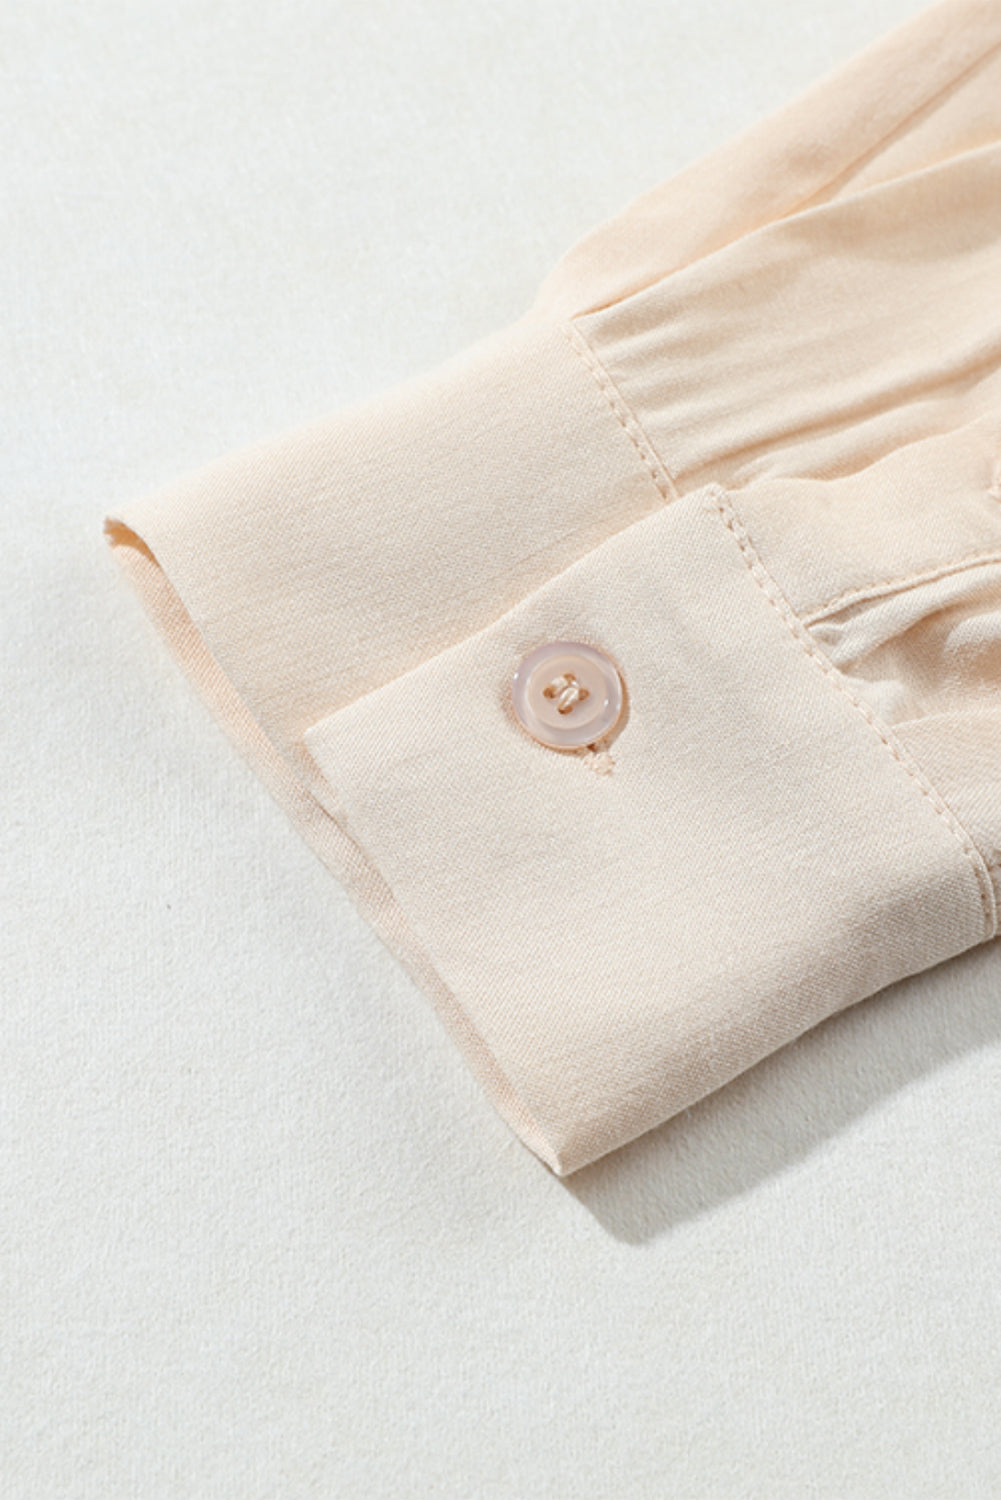 Jednobojna široka košulja s dugmićima na prsima boje marelice